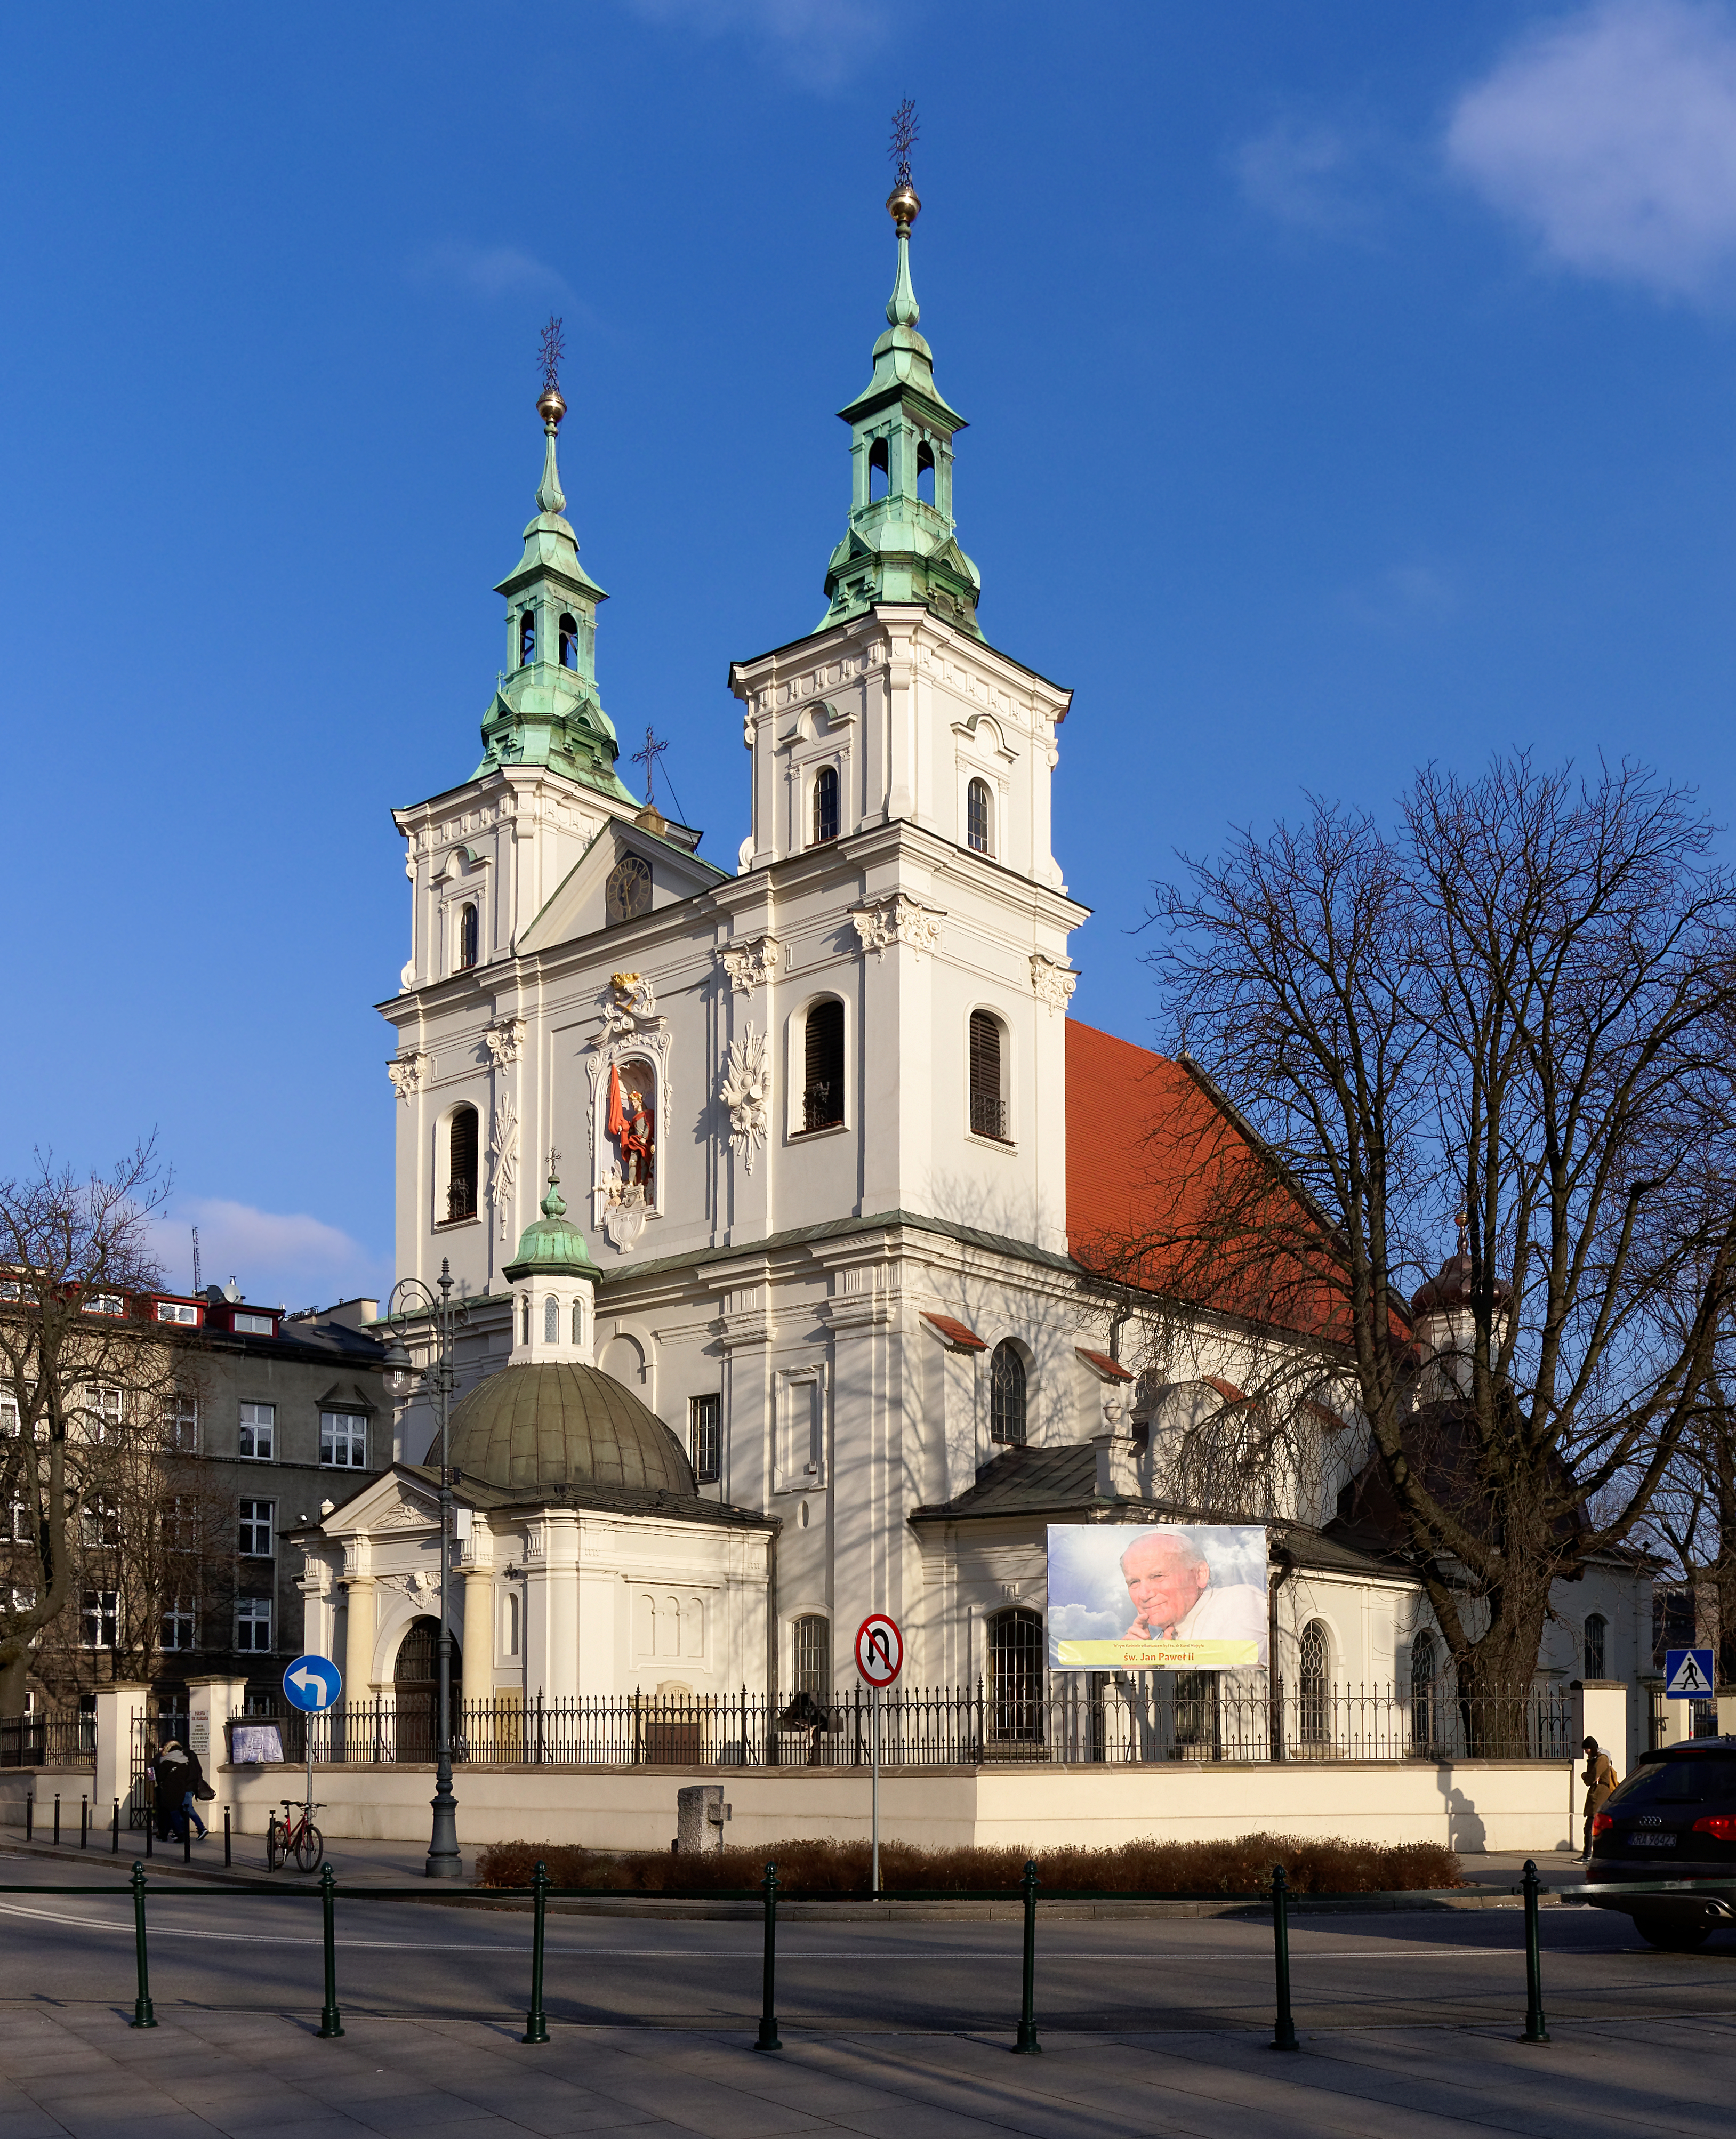 20180114 Kościół św. Floriana w Krakowie 0108 DxO